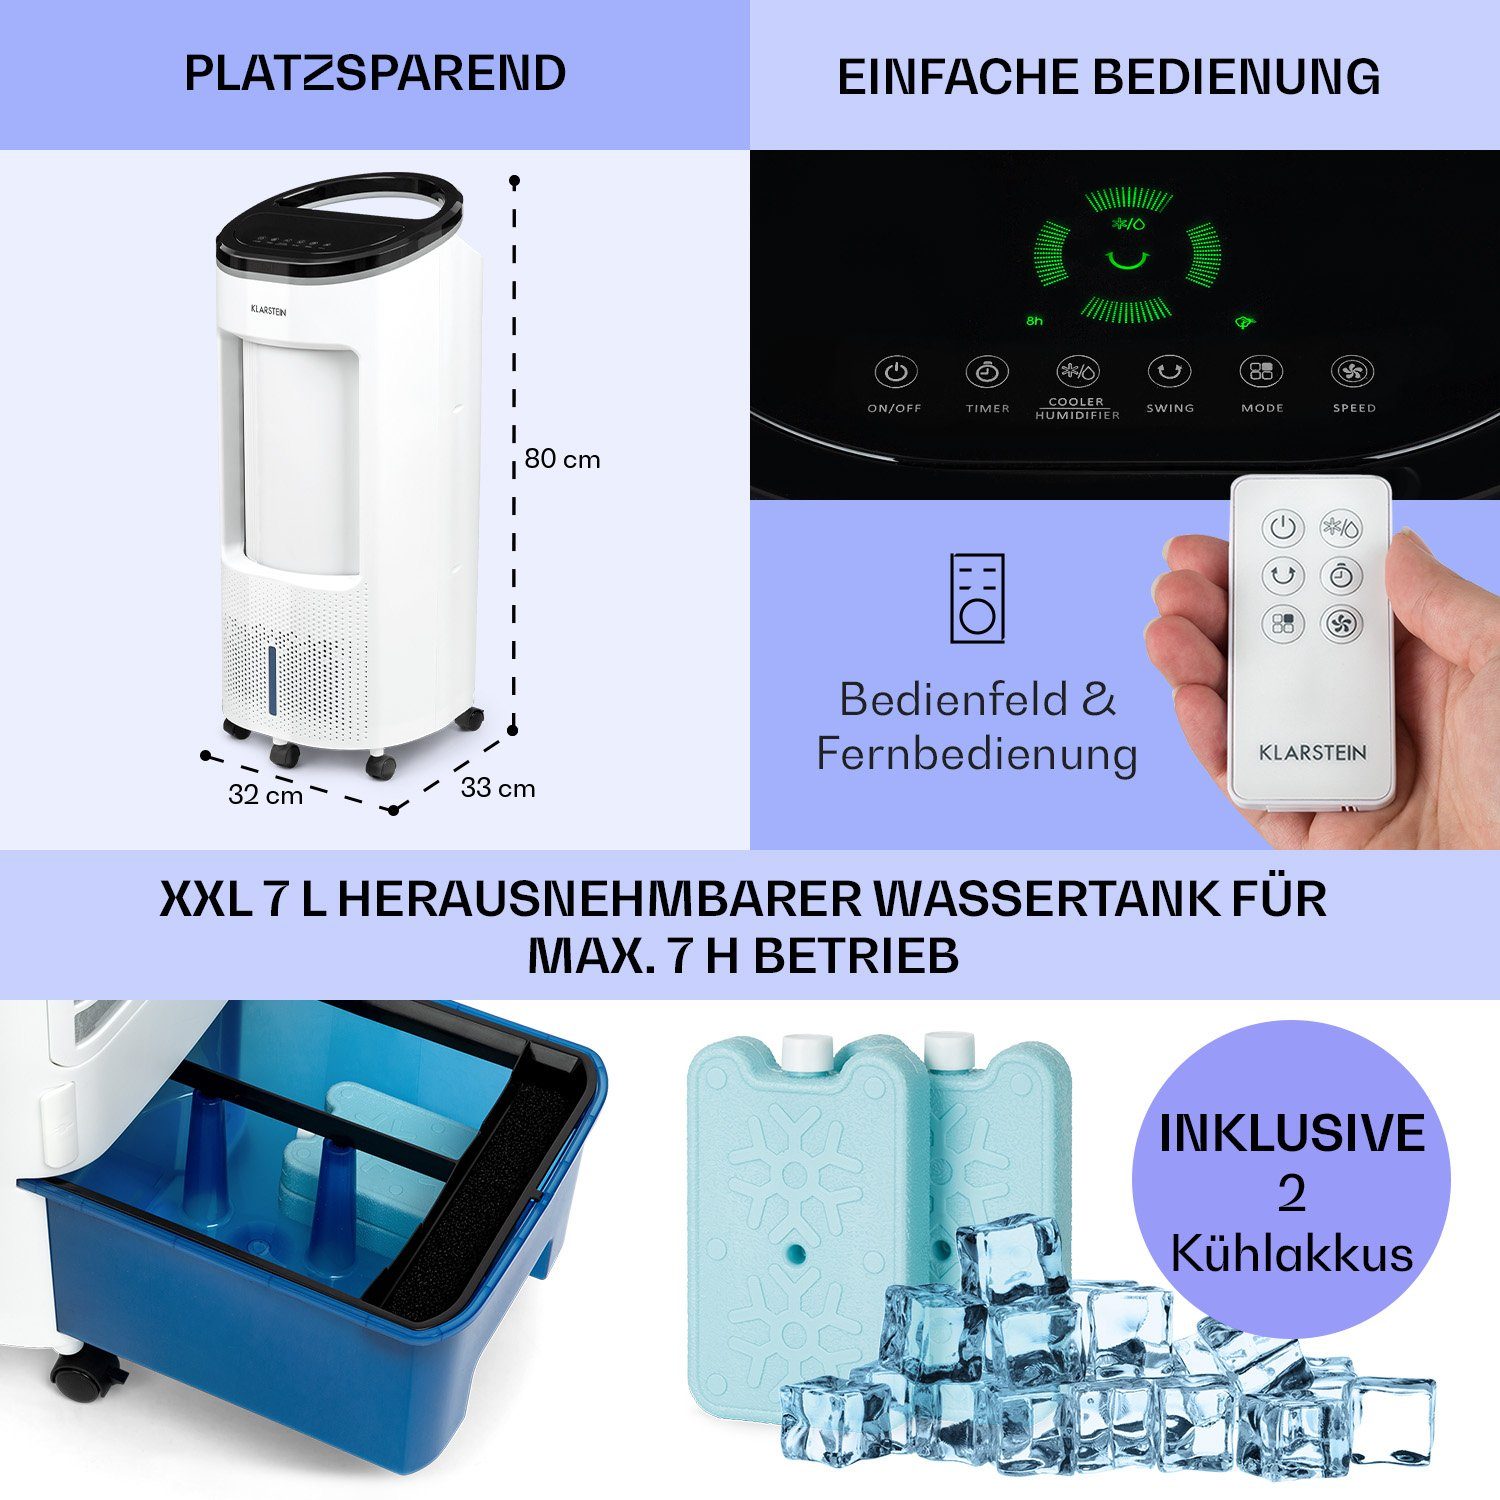 mobil Klimagerät Plus Klarstein Luftkühler, 4-in-1 mit & ohne Eis Wasserkühlung Abluftschlauch Ventilatorkombigerät IceWind